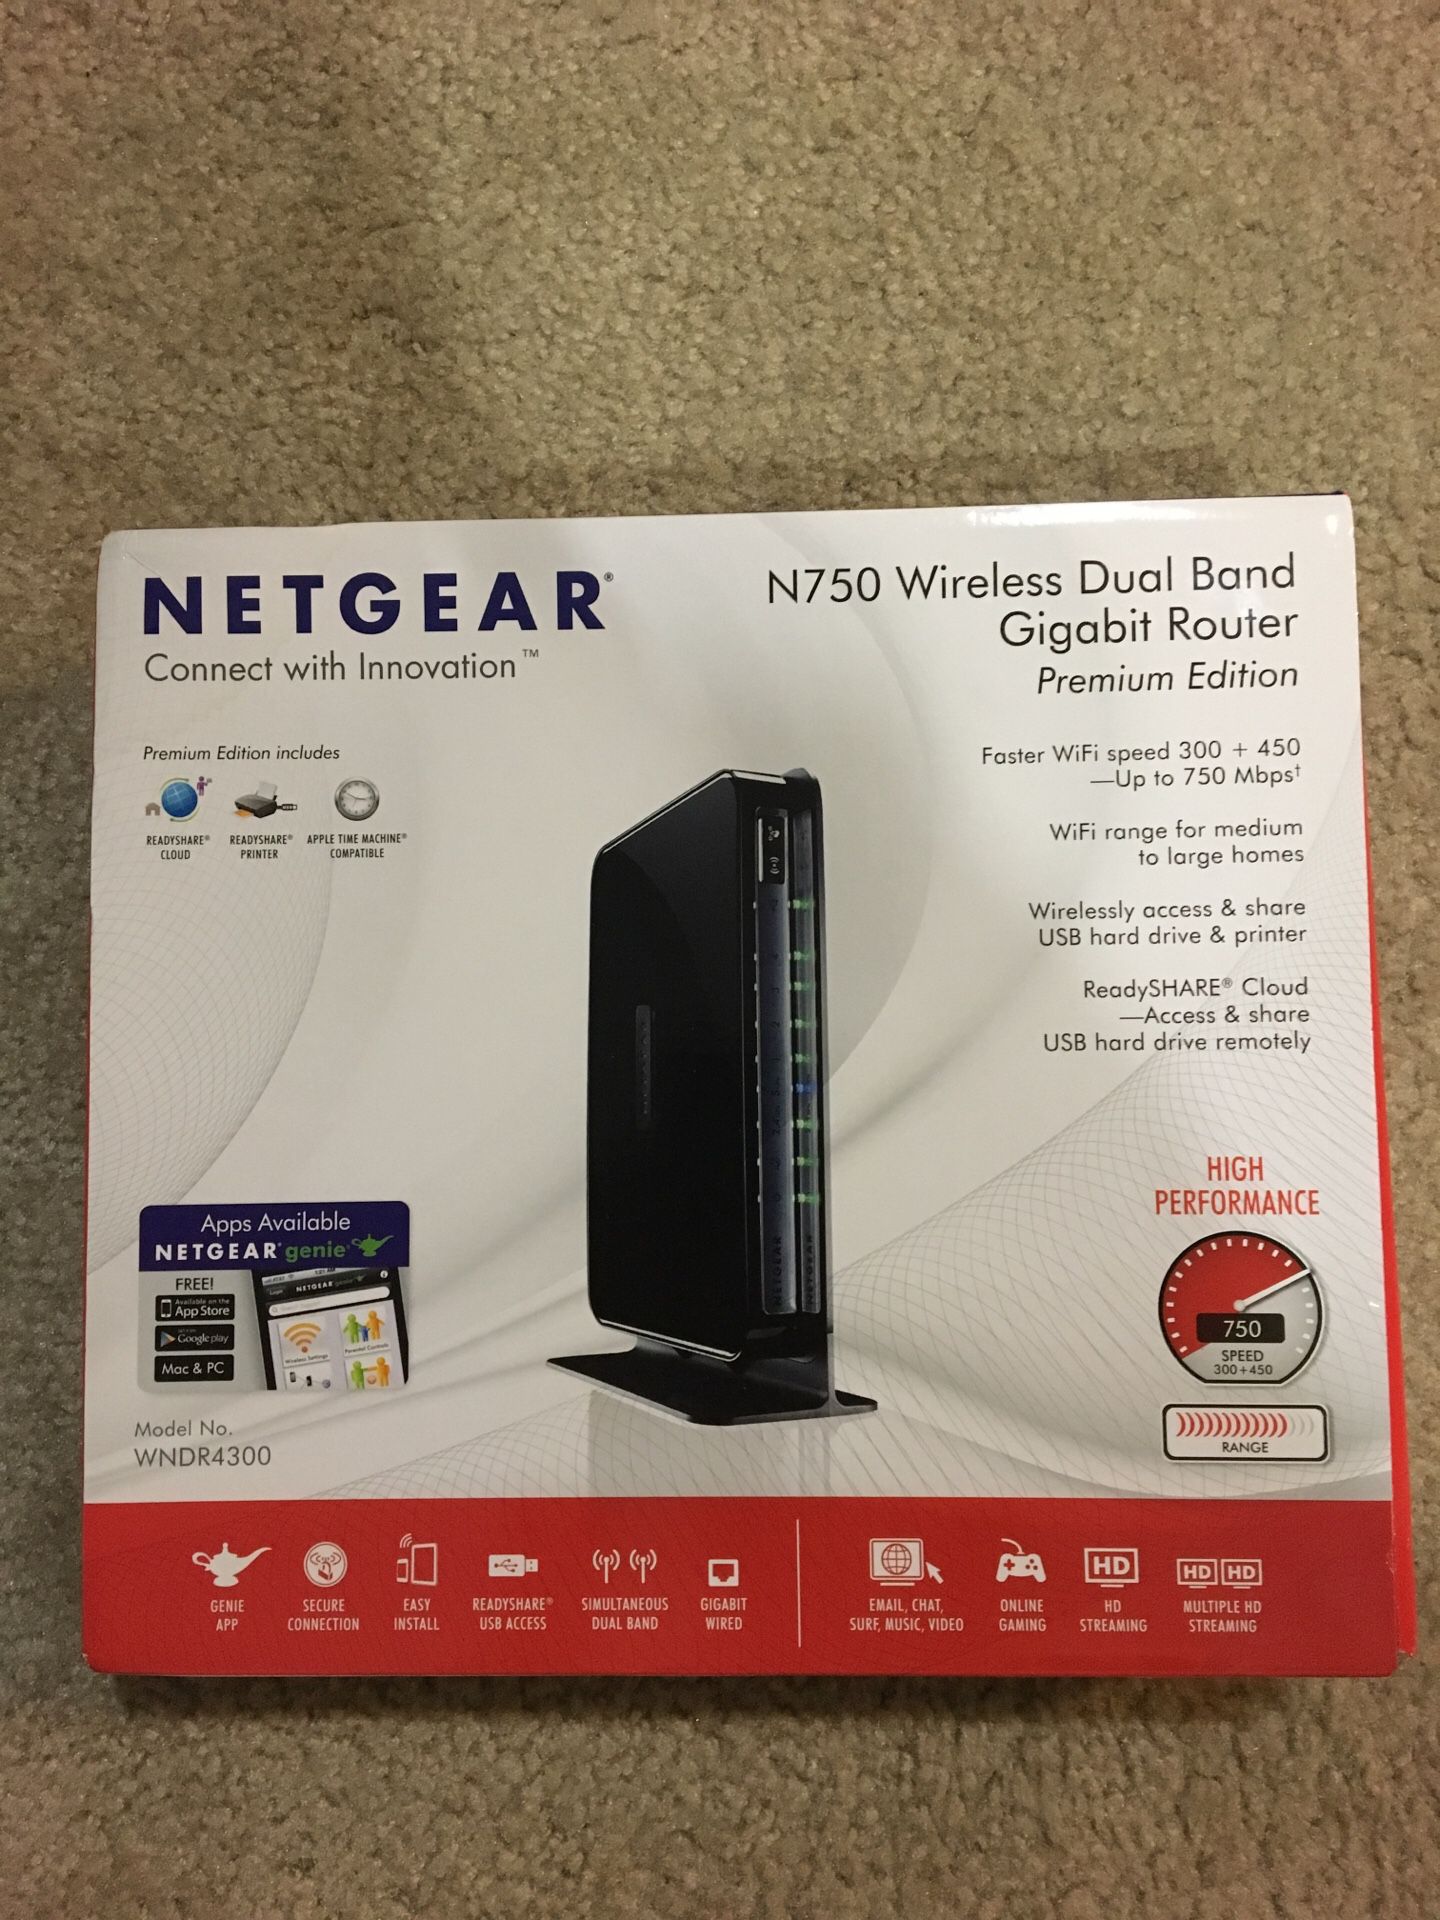 New Netgear N750 wireless duel band gigabit router